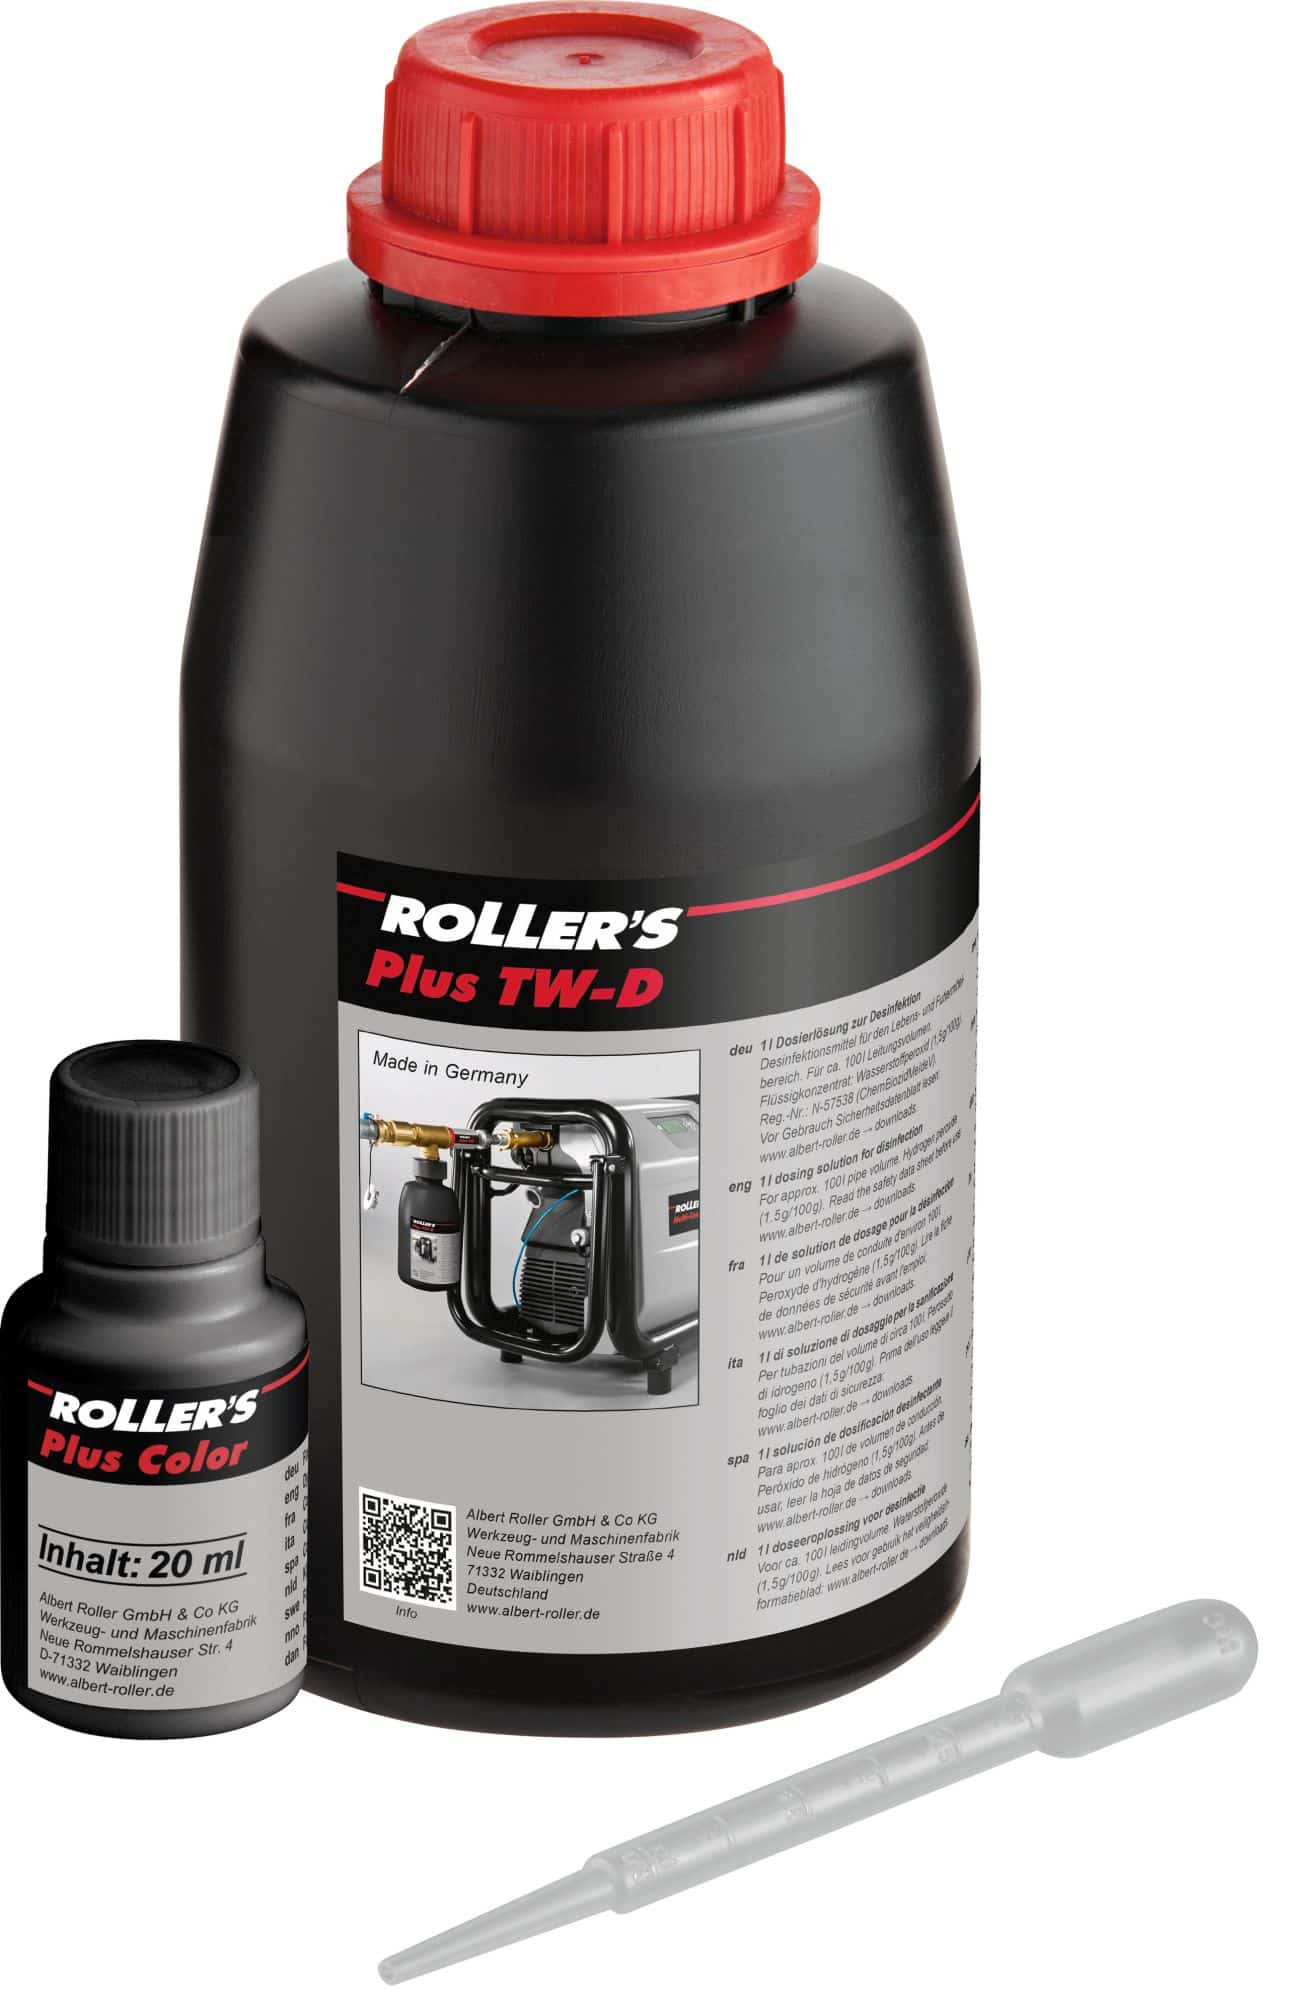 ROLLER'S Plus TW-D Color